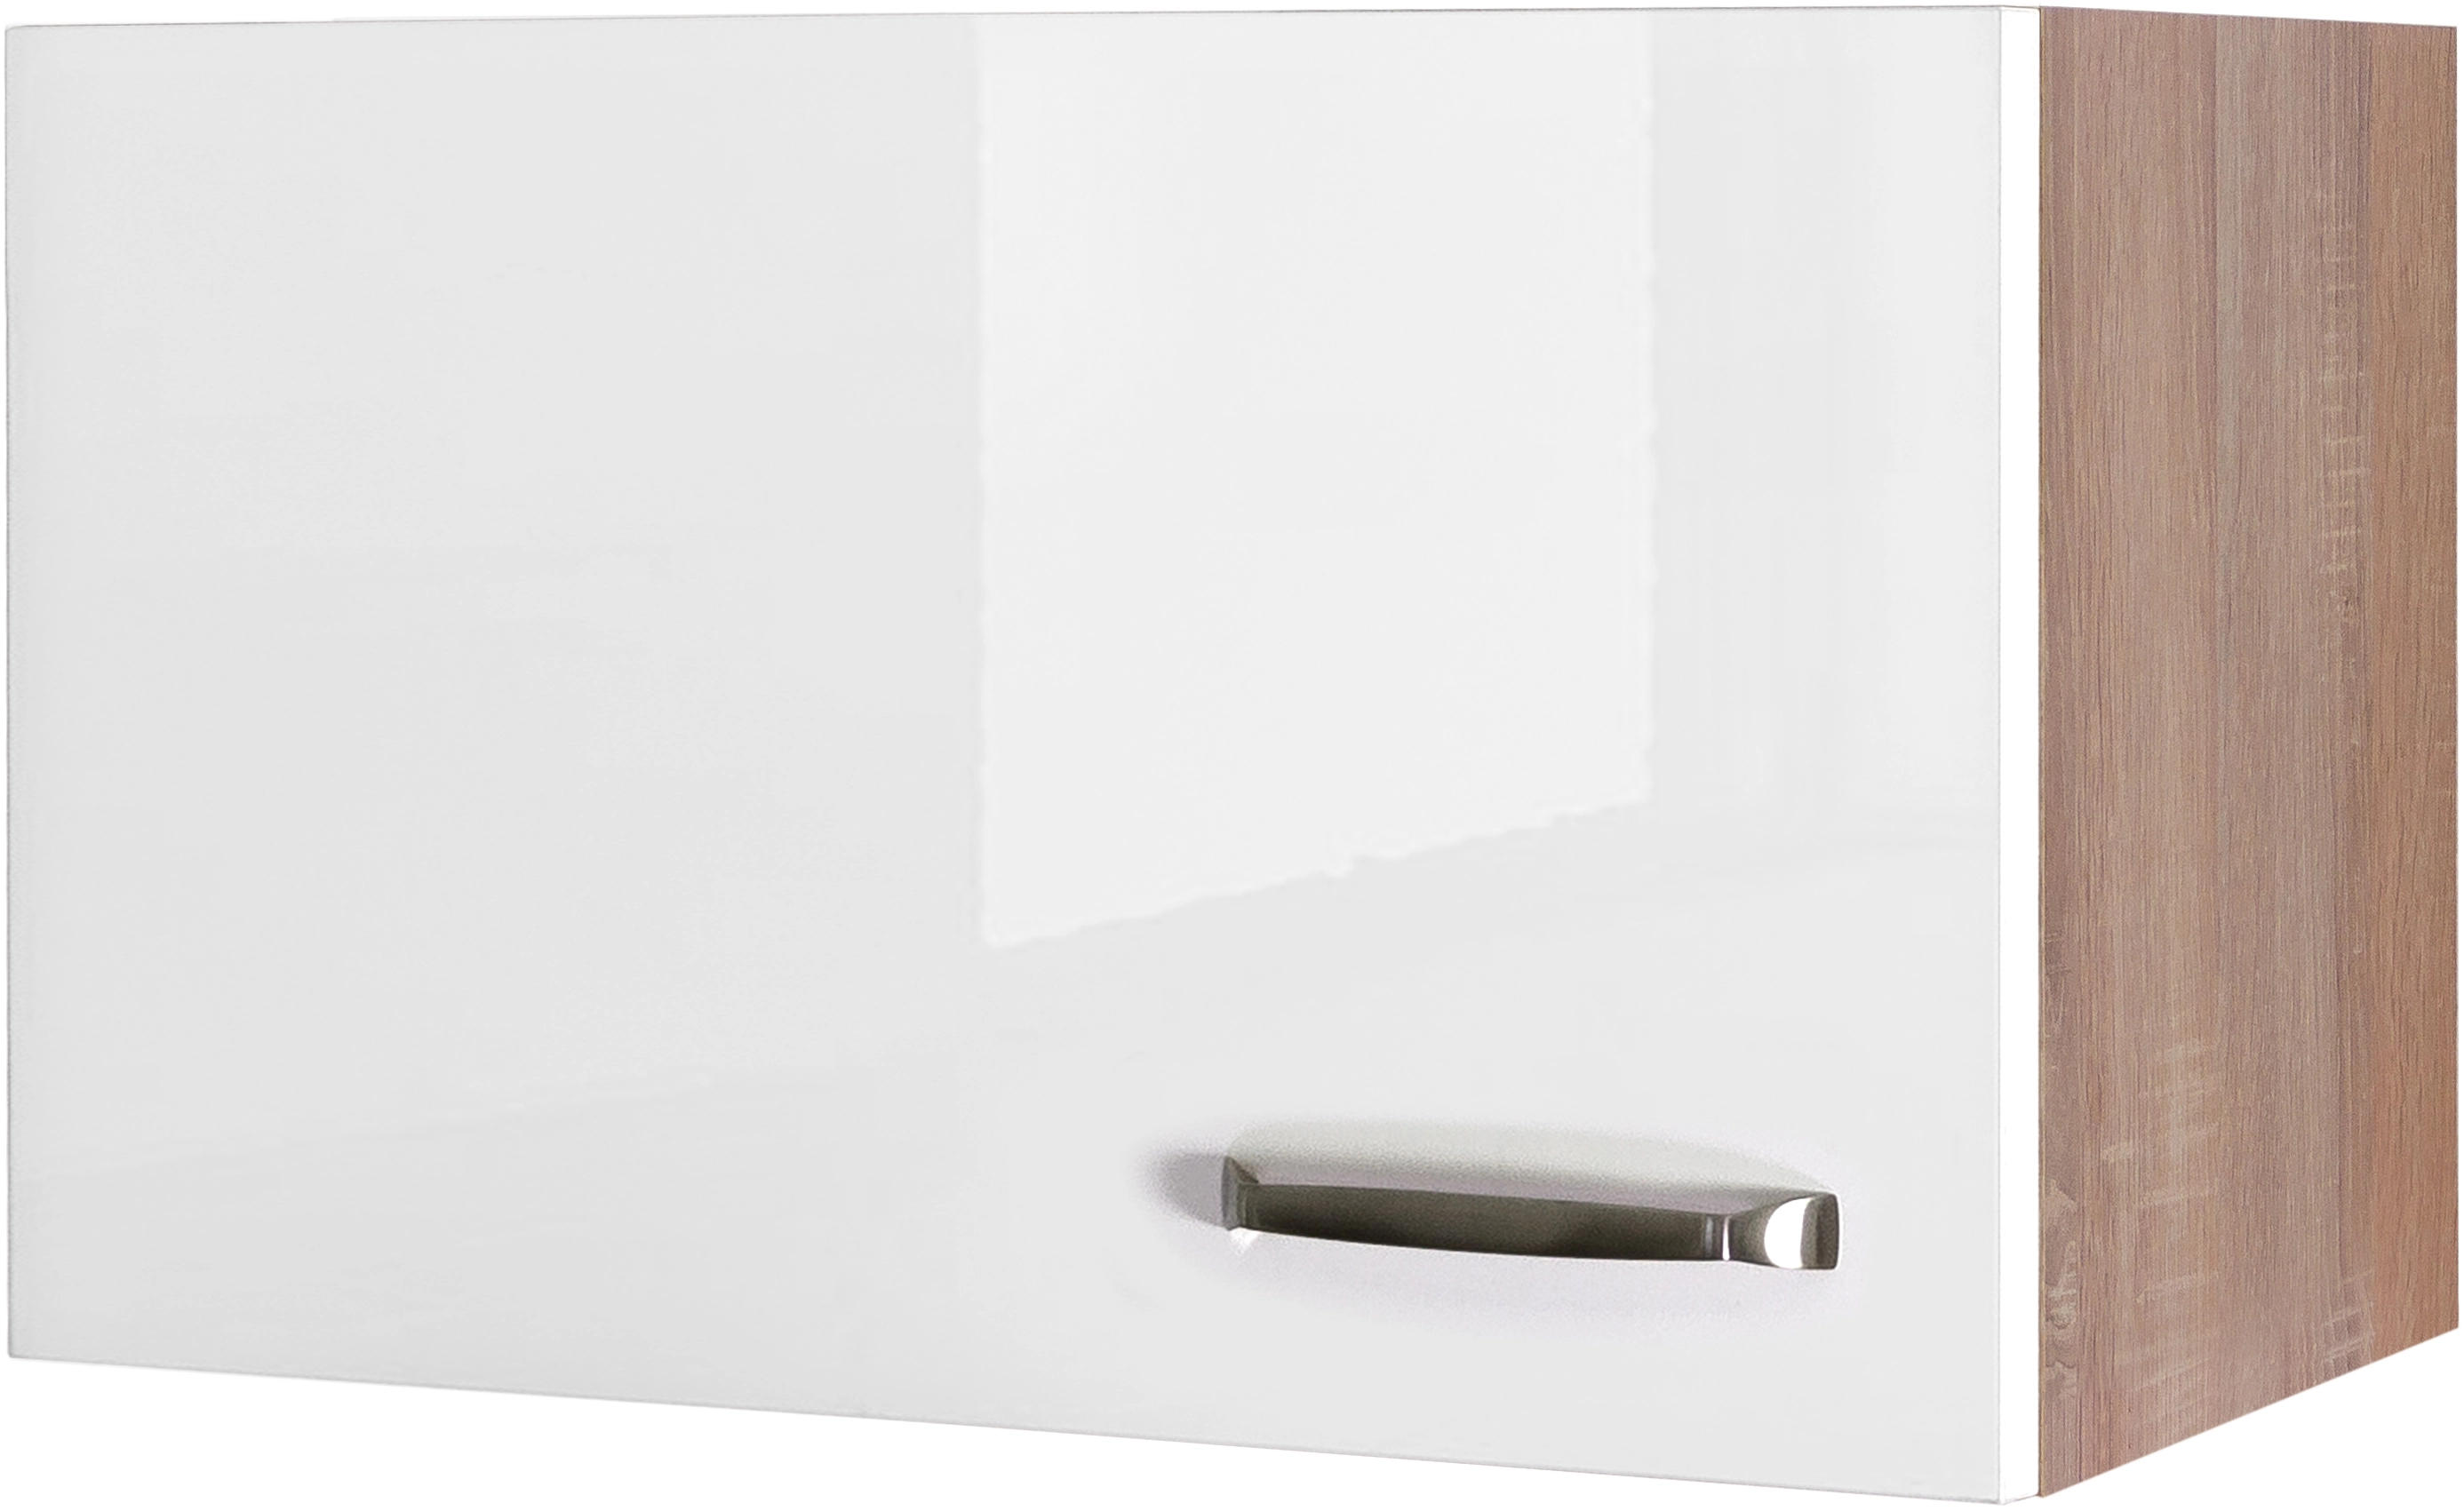 Flex-Well Exclusiv Kurz-Hängeschrank Valero 60 cm x 32 cm Hochglanz Weiß  kaufen bei OBI